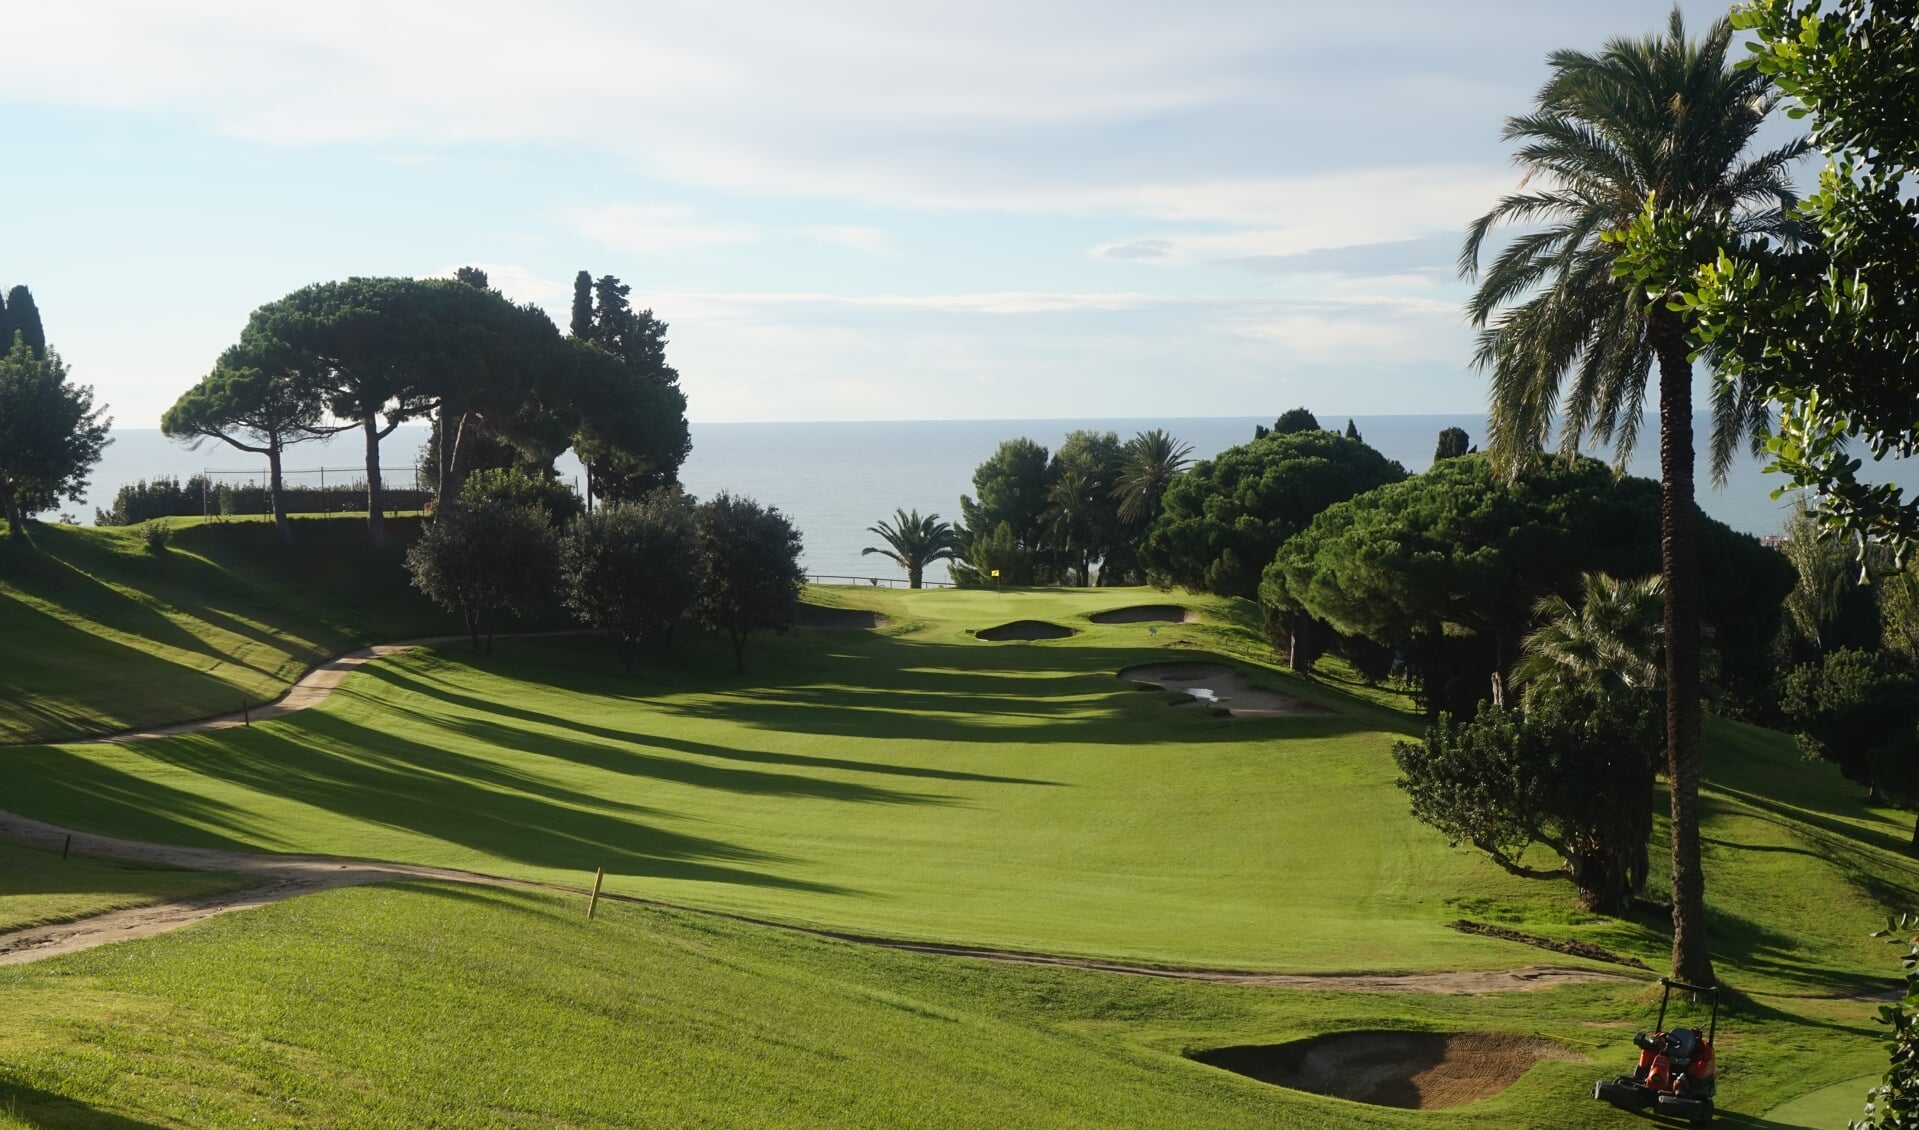 De zeventiende hole, blikvanger van Club de Golf Llavaneras: een prachtige oude baan met geweldige uitzichten.